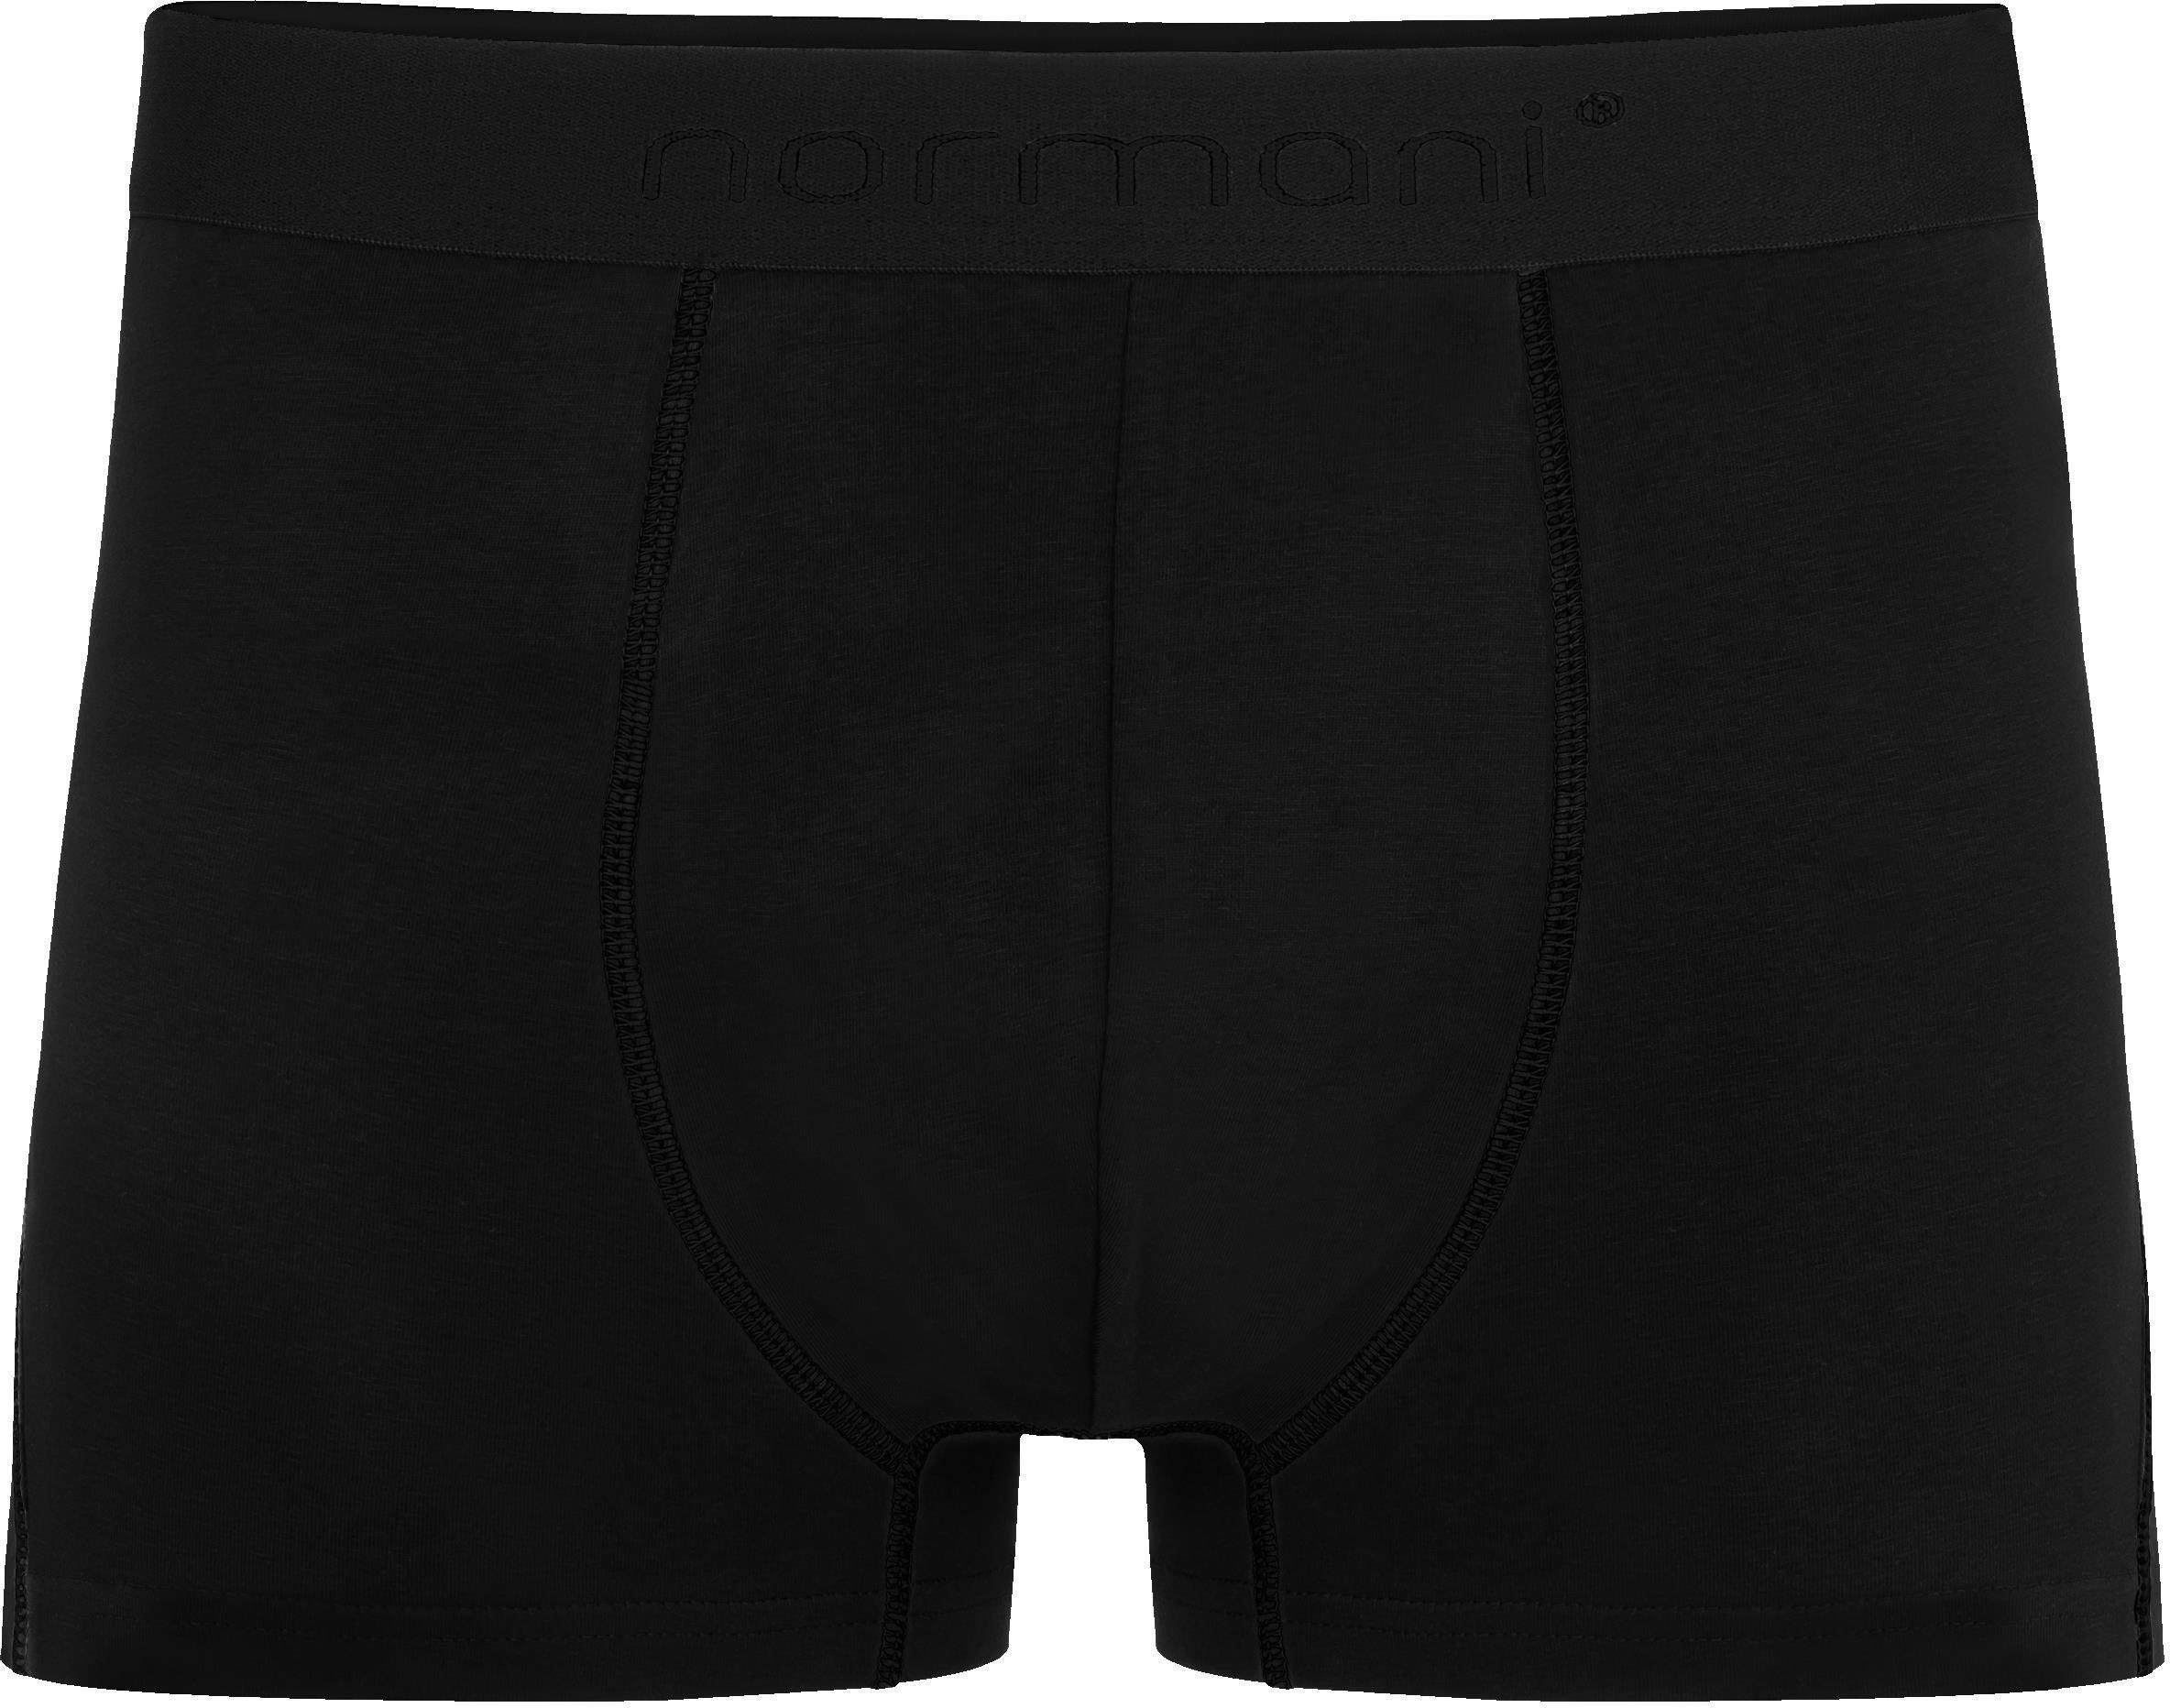 6 Schwarz Männer Unterhose Baumwoll-Boxershorts aus für normani Herren Boxershorts Baumwolle atmungsaktiver